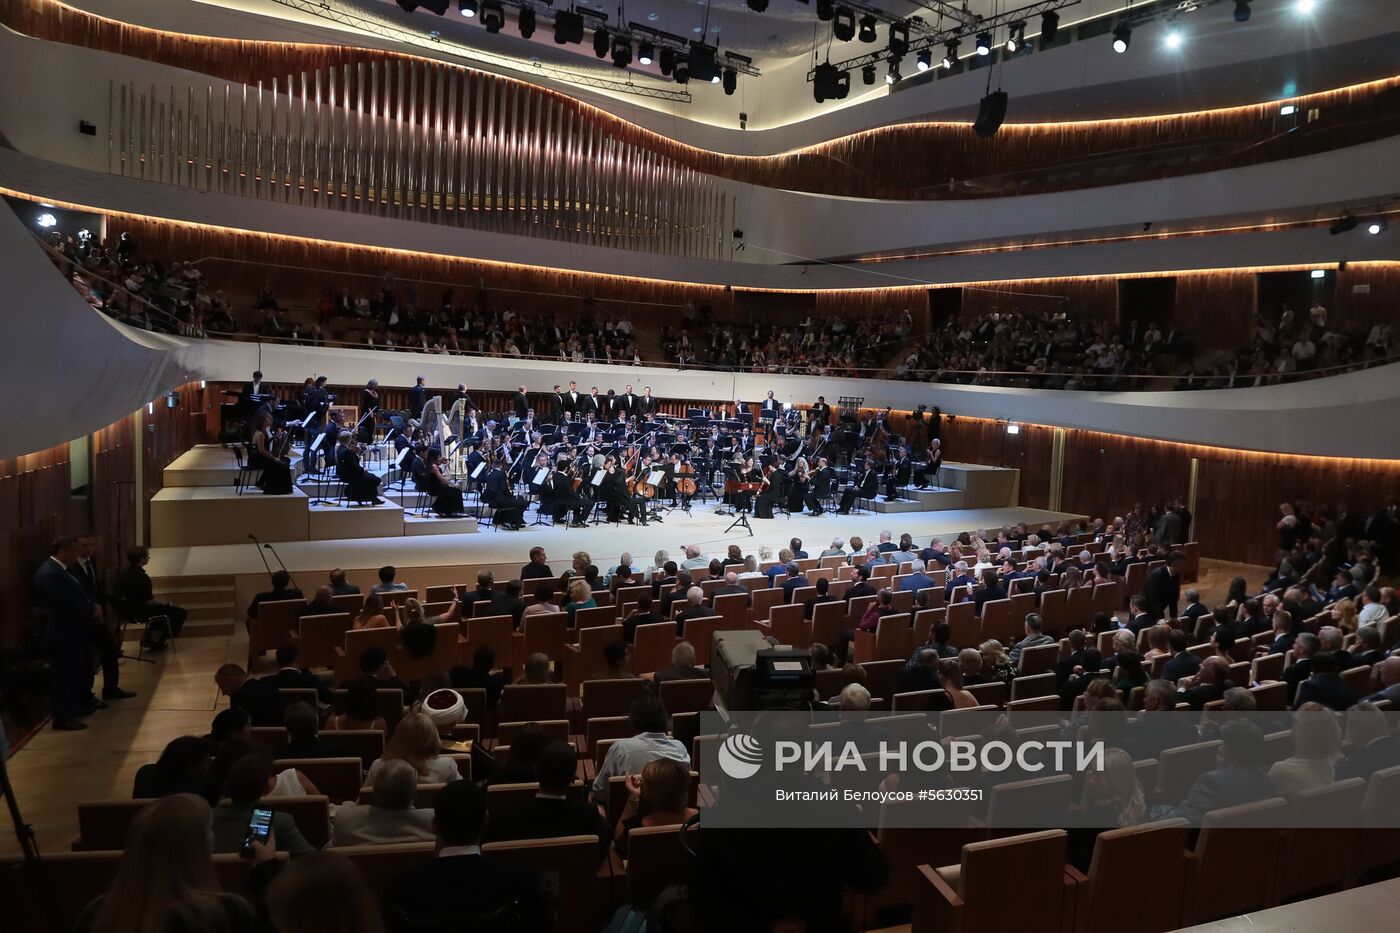 Открытие концертного зала "Зарядье"